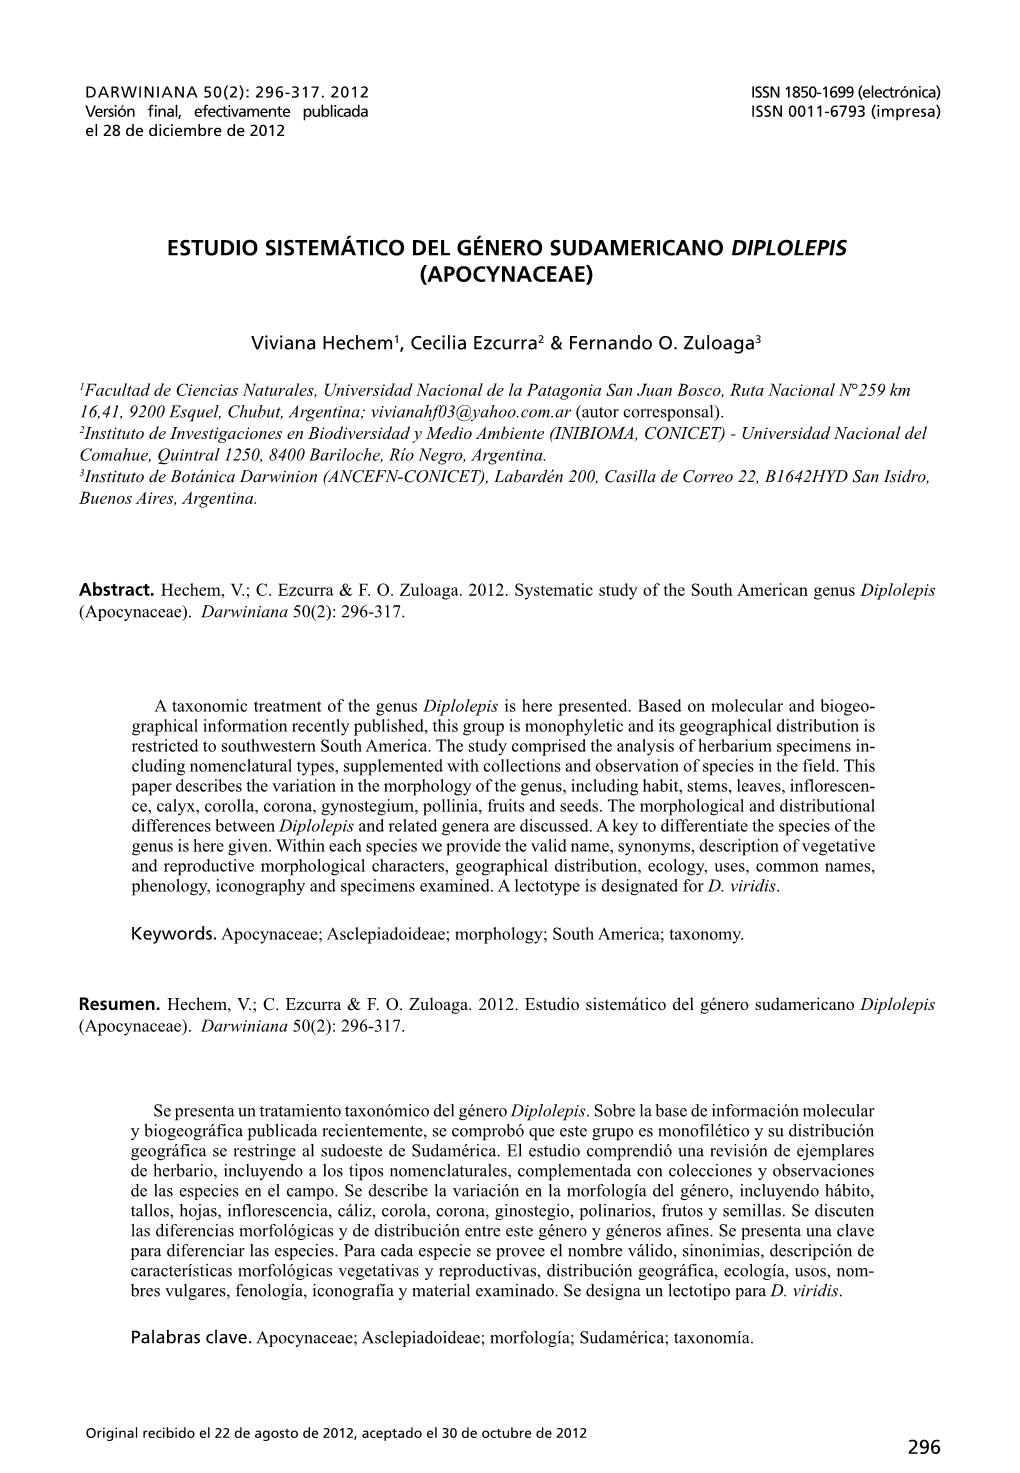 Estudio Sistemático Del Género Sudamericano Diplolepis (Apocynaceae)